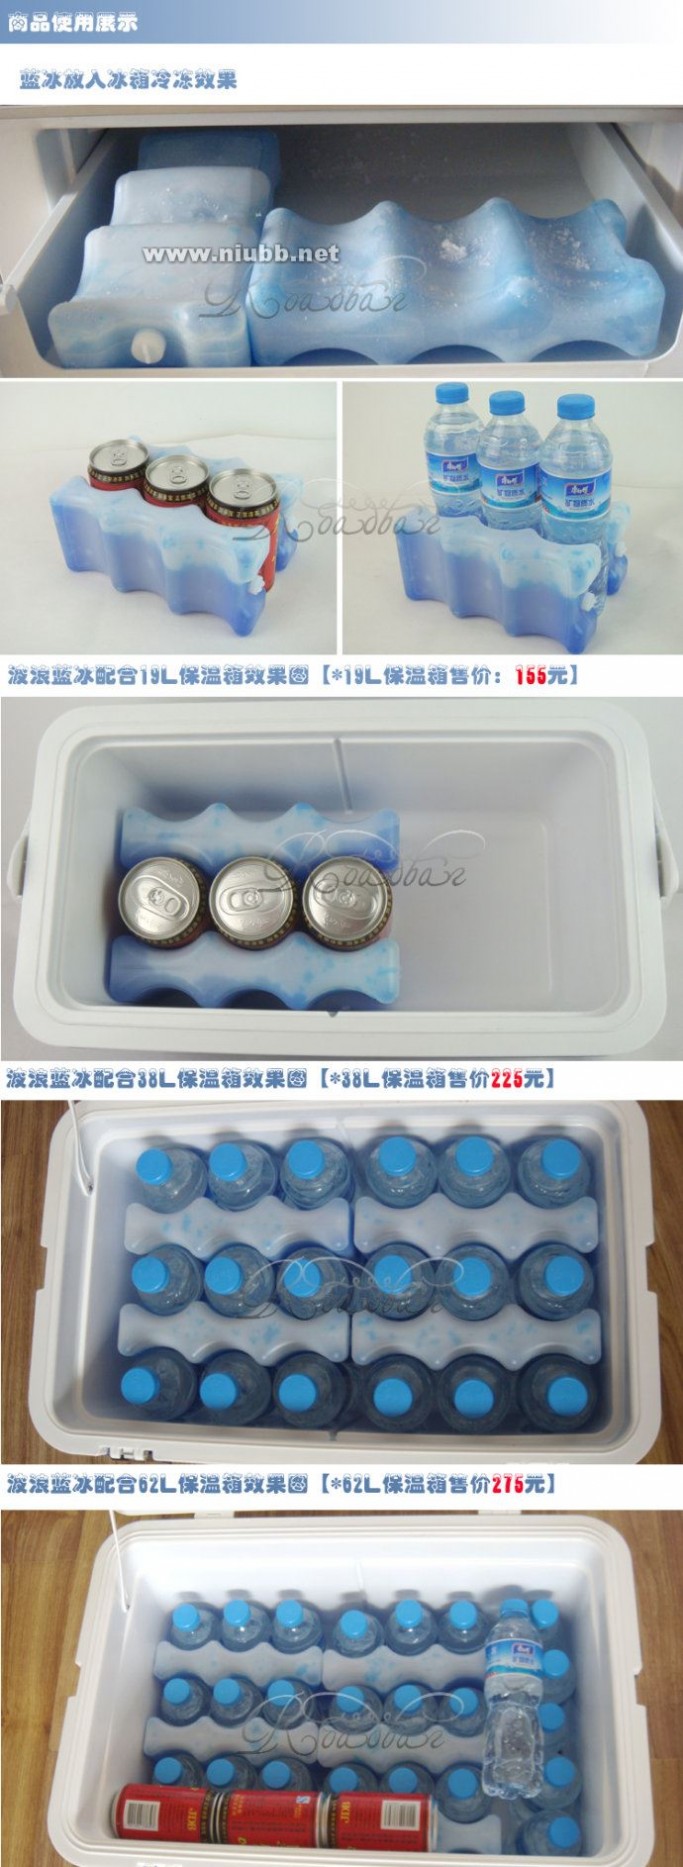 蓝冰是什么？波浪蓝冰保温包热卖波浪蓝冰冰盒冰袋保温冷剂包户外循环使用600克超值